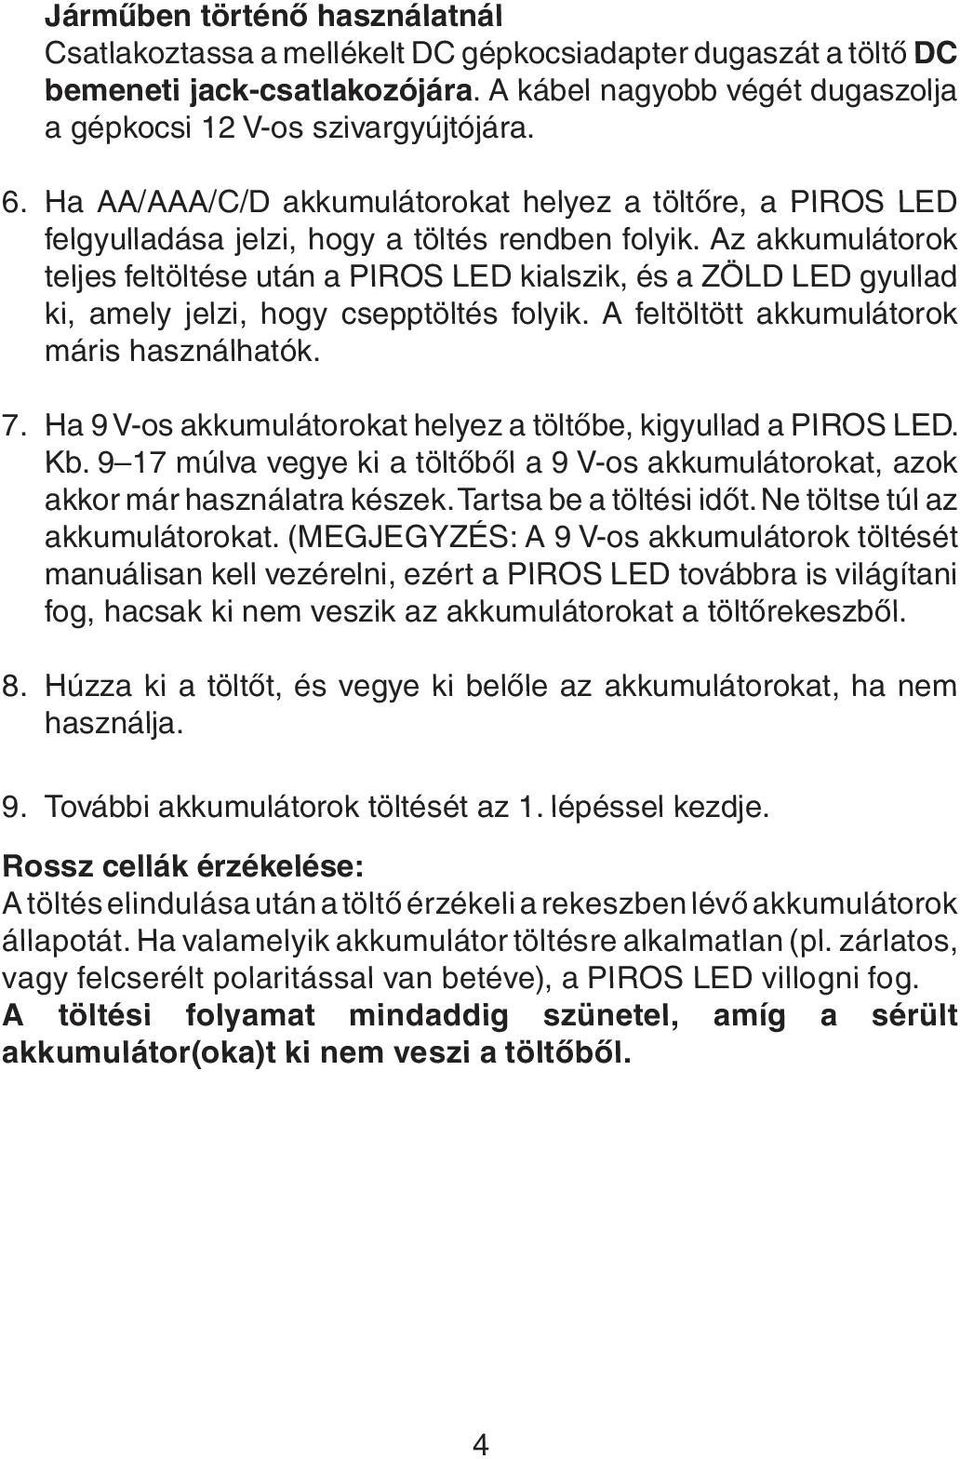 Az akkumulátorok teljes feltöltése után a PIROS LED kialszik, és a ZÖLD LED gyullad ki, amely jelzi, hogy csepptöltés folyik. A feltöltött akkumulátorok máris használhatók. 7.